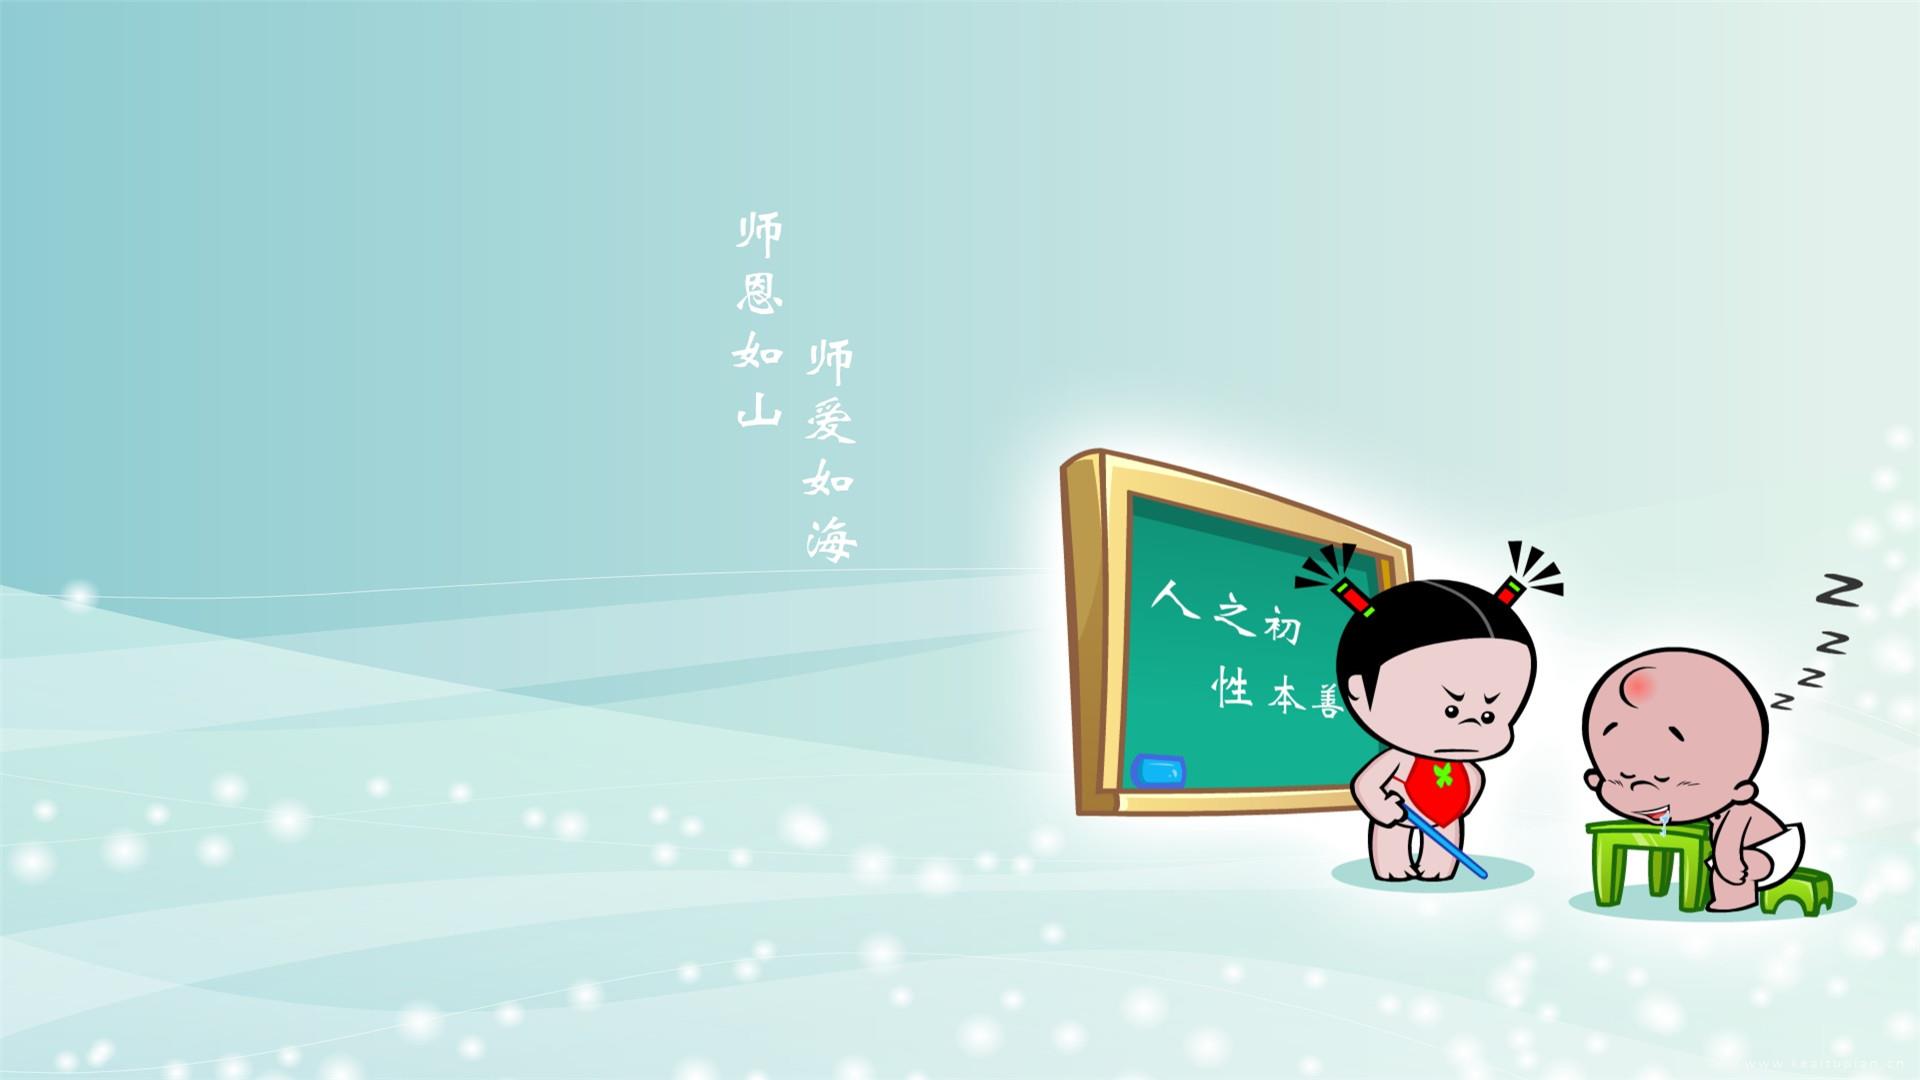 可爱卡通人物祝福教师节高清文字桌面壁纸图片